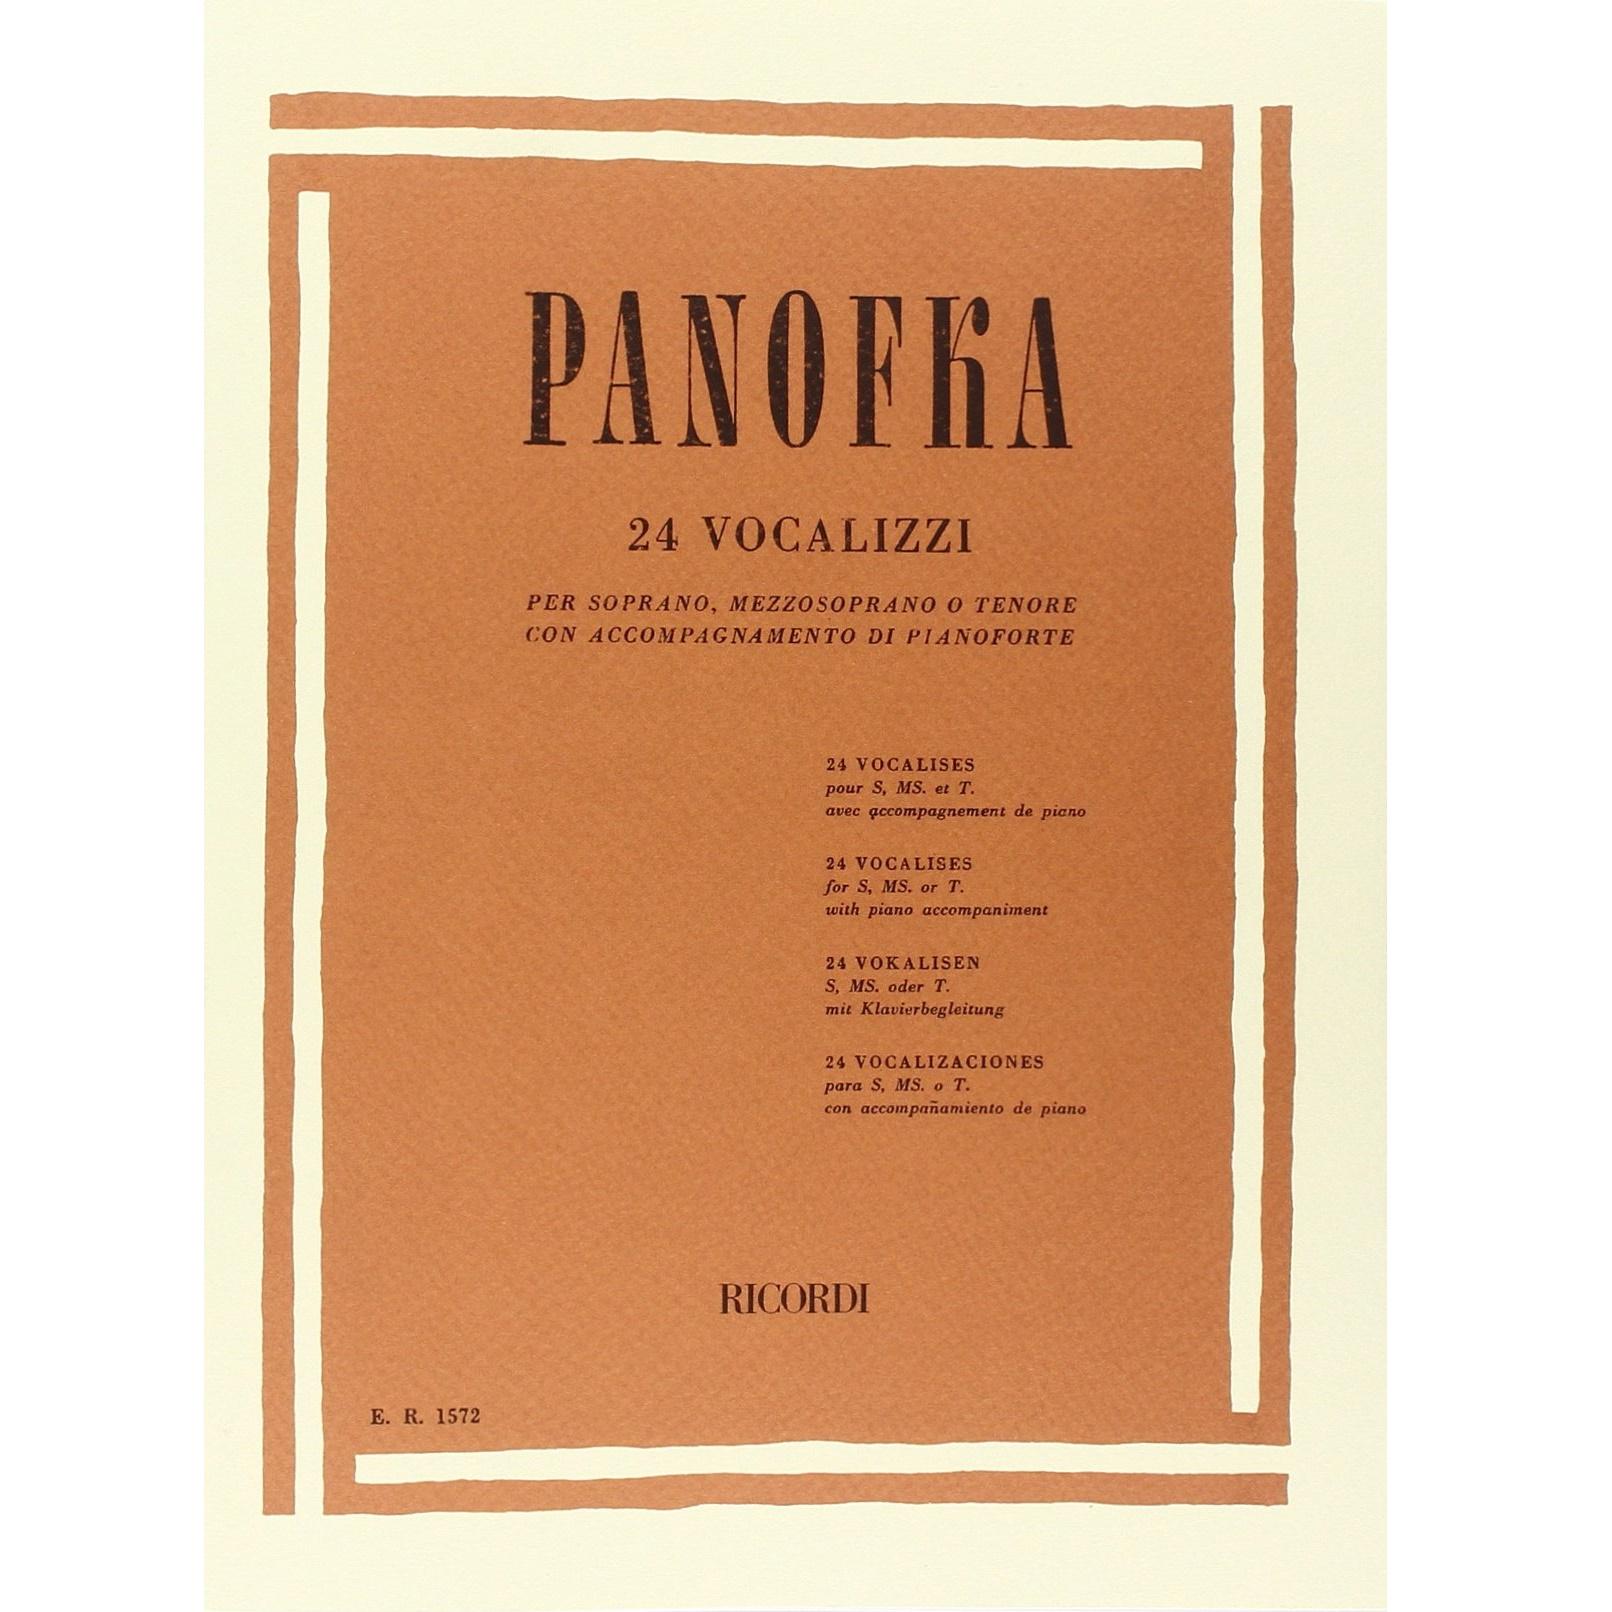 Panofkra 24 Vocalizzi per soprano mezzosoprano o tenore - Ricordi